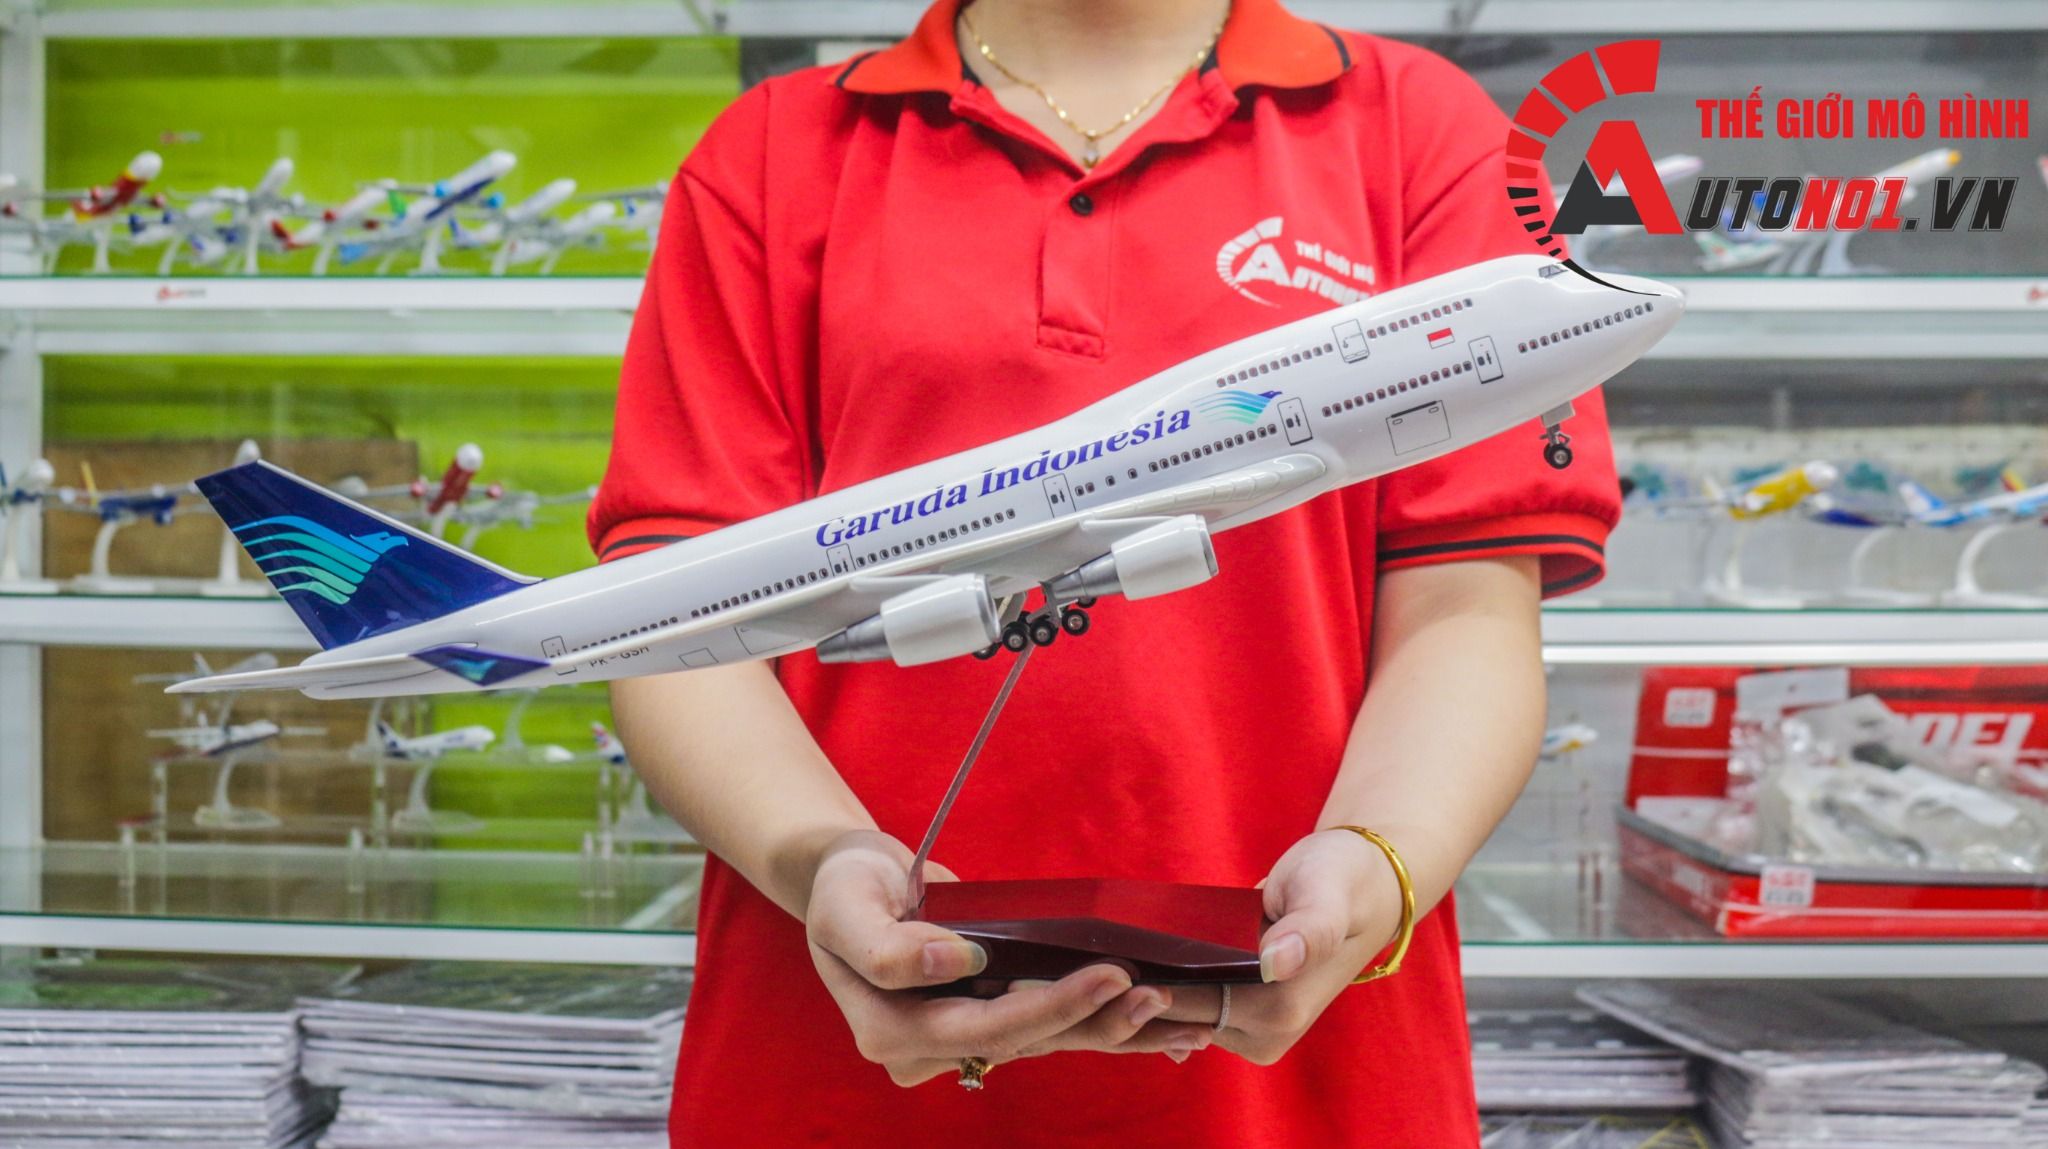  Mô hình máy bay Garuda Indonesia Boeing B747 47cm 1:150 có đèn led tự động theo tiếng vỗ tay hoặc chạm MB47049 